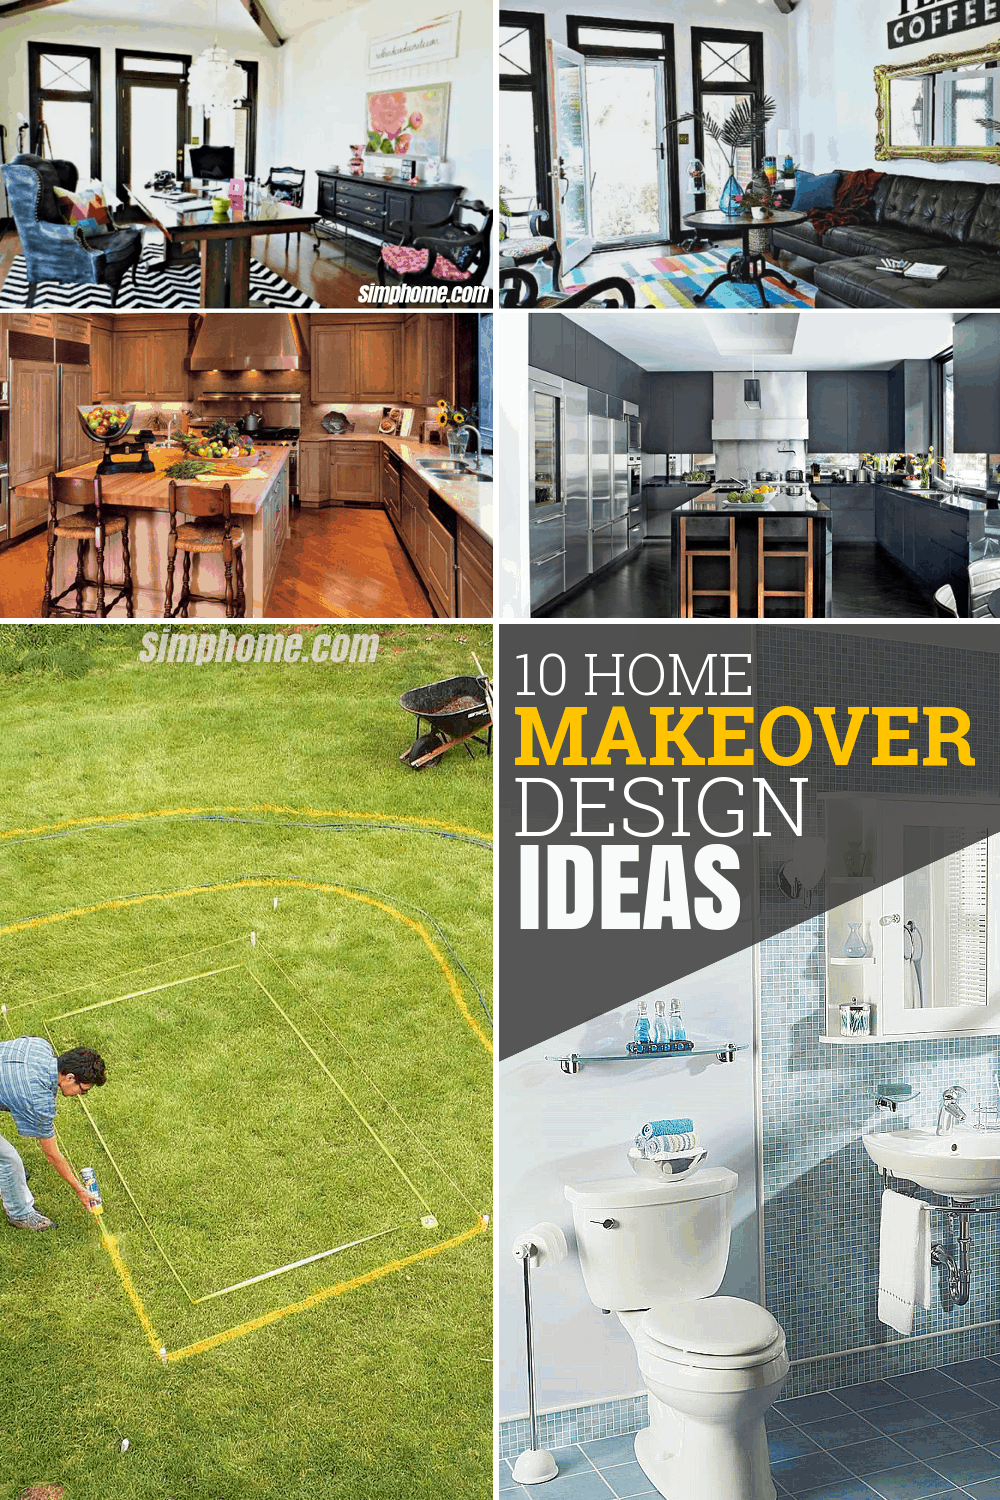 10 home makeover design ideas via Simphome com Featured Pinterest